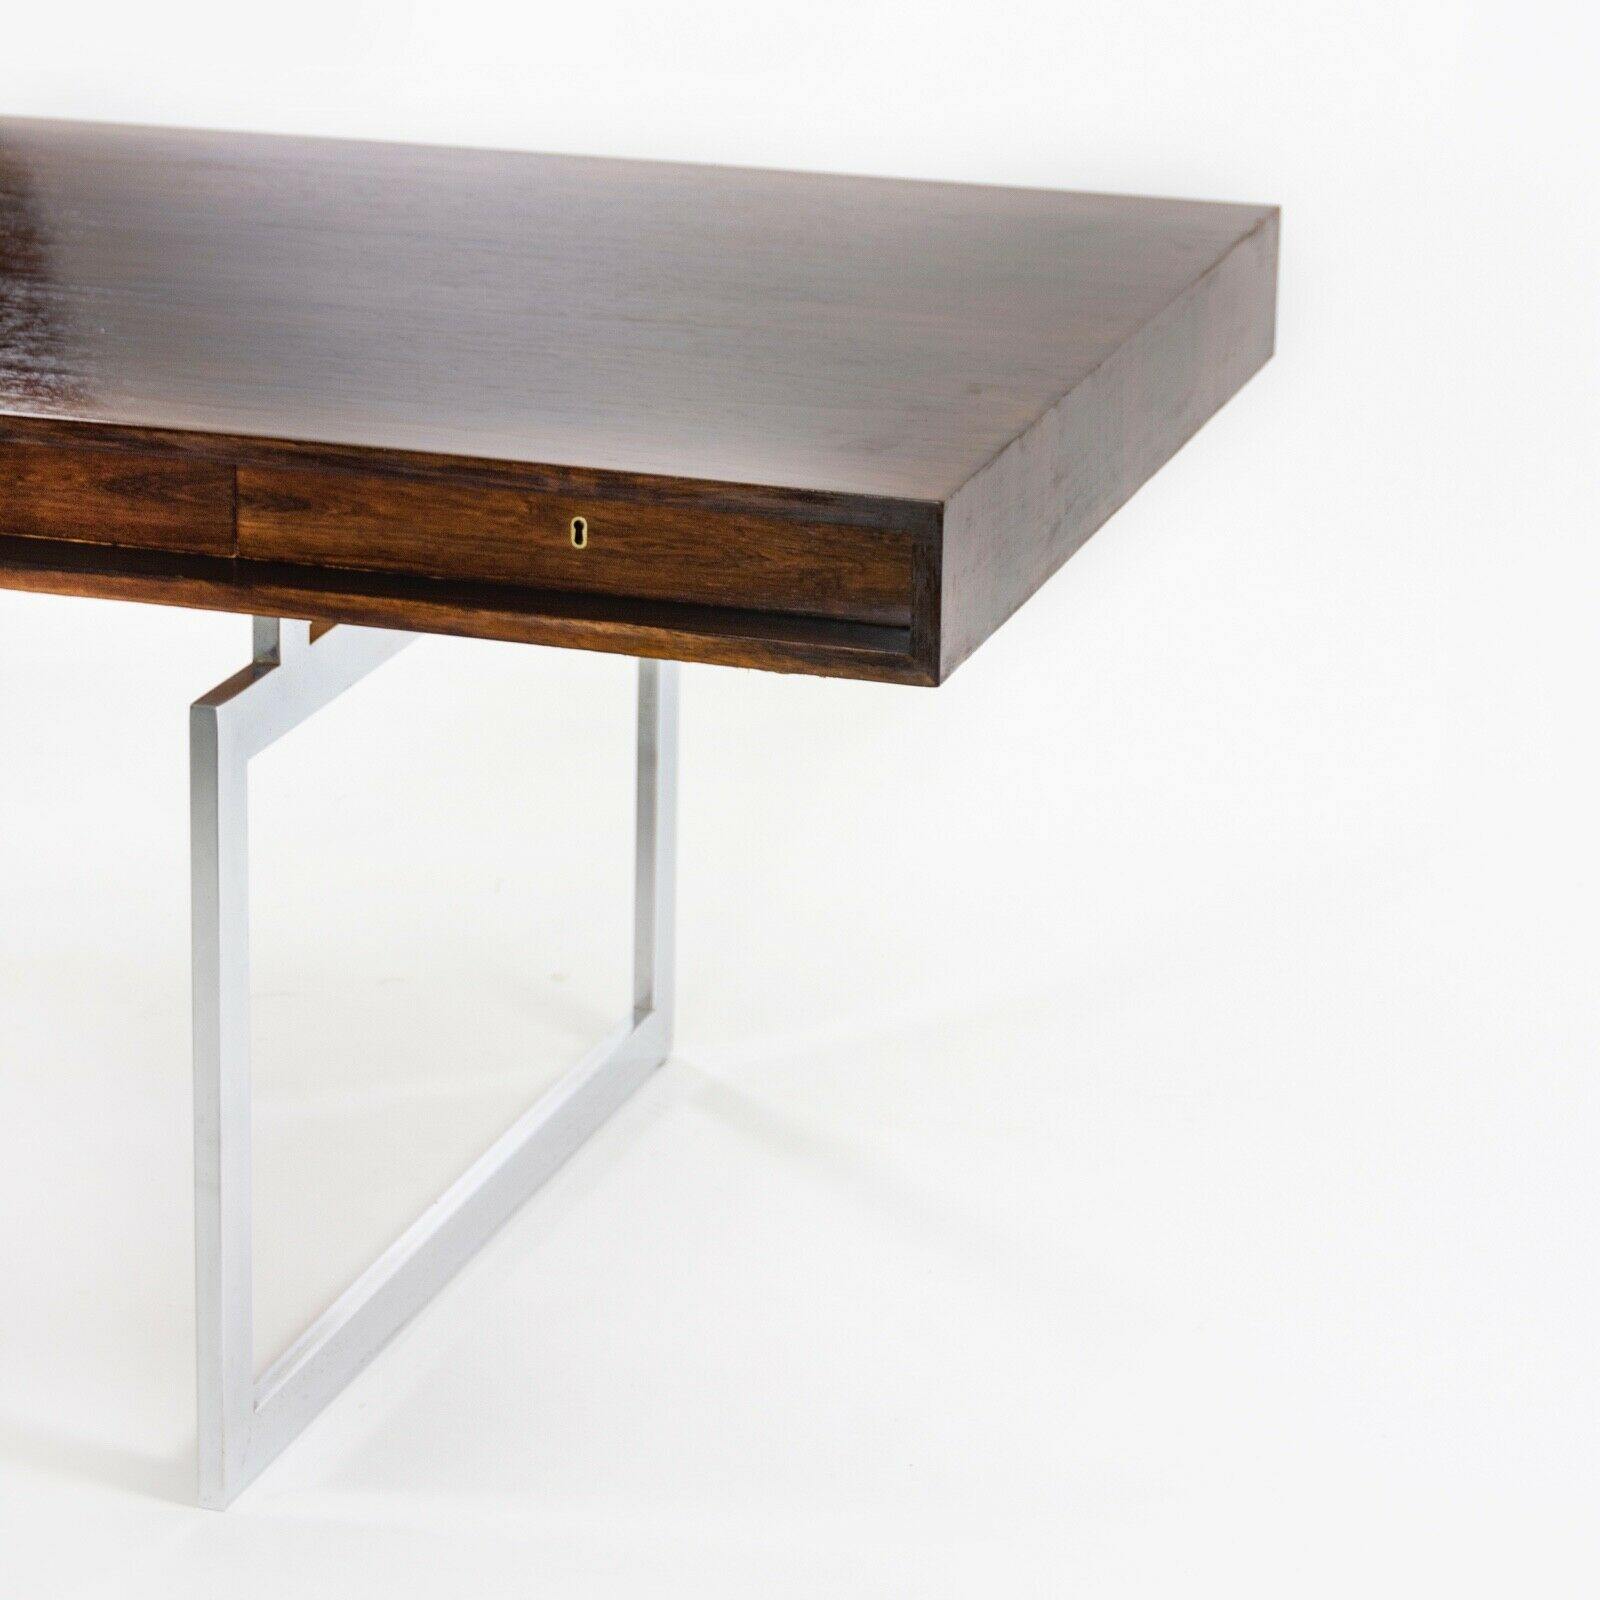 1959 4-Drawer Bodil Kjaer Desk for E. Pedersen and Son Brazilian Rosewood Made in Denmark - Rarify Inc.